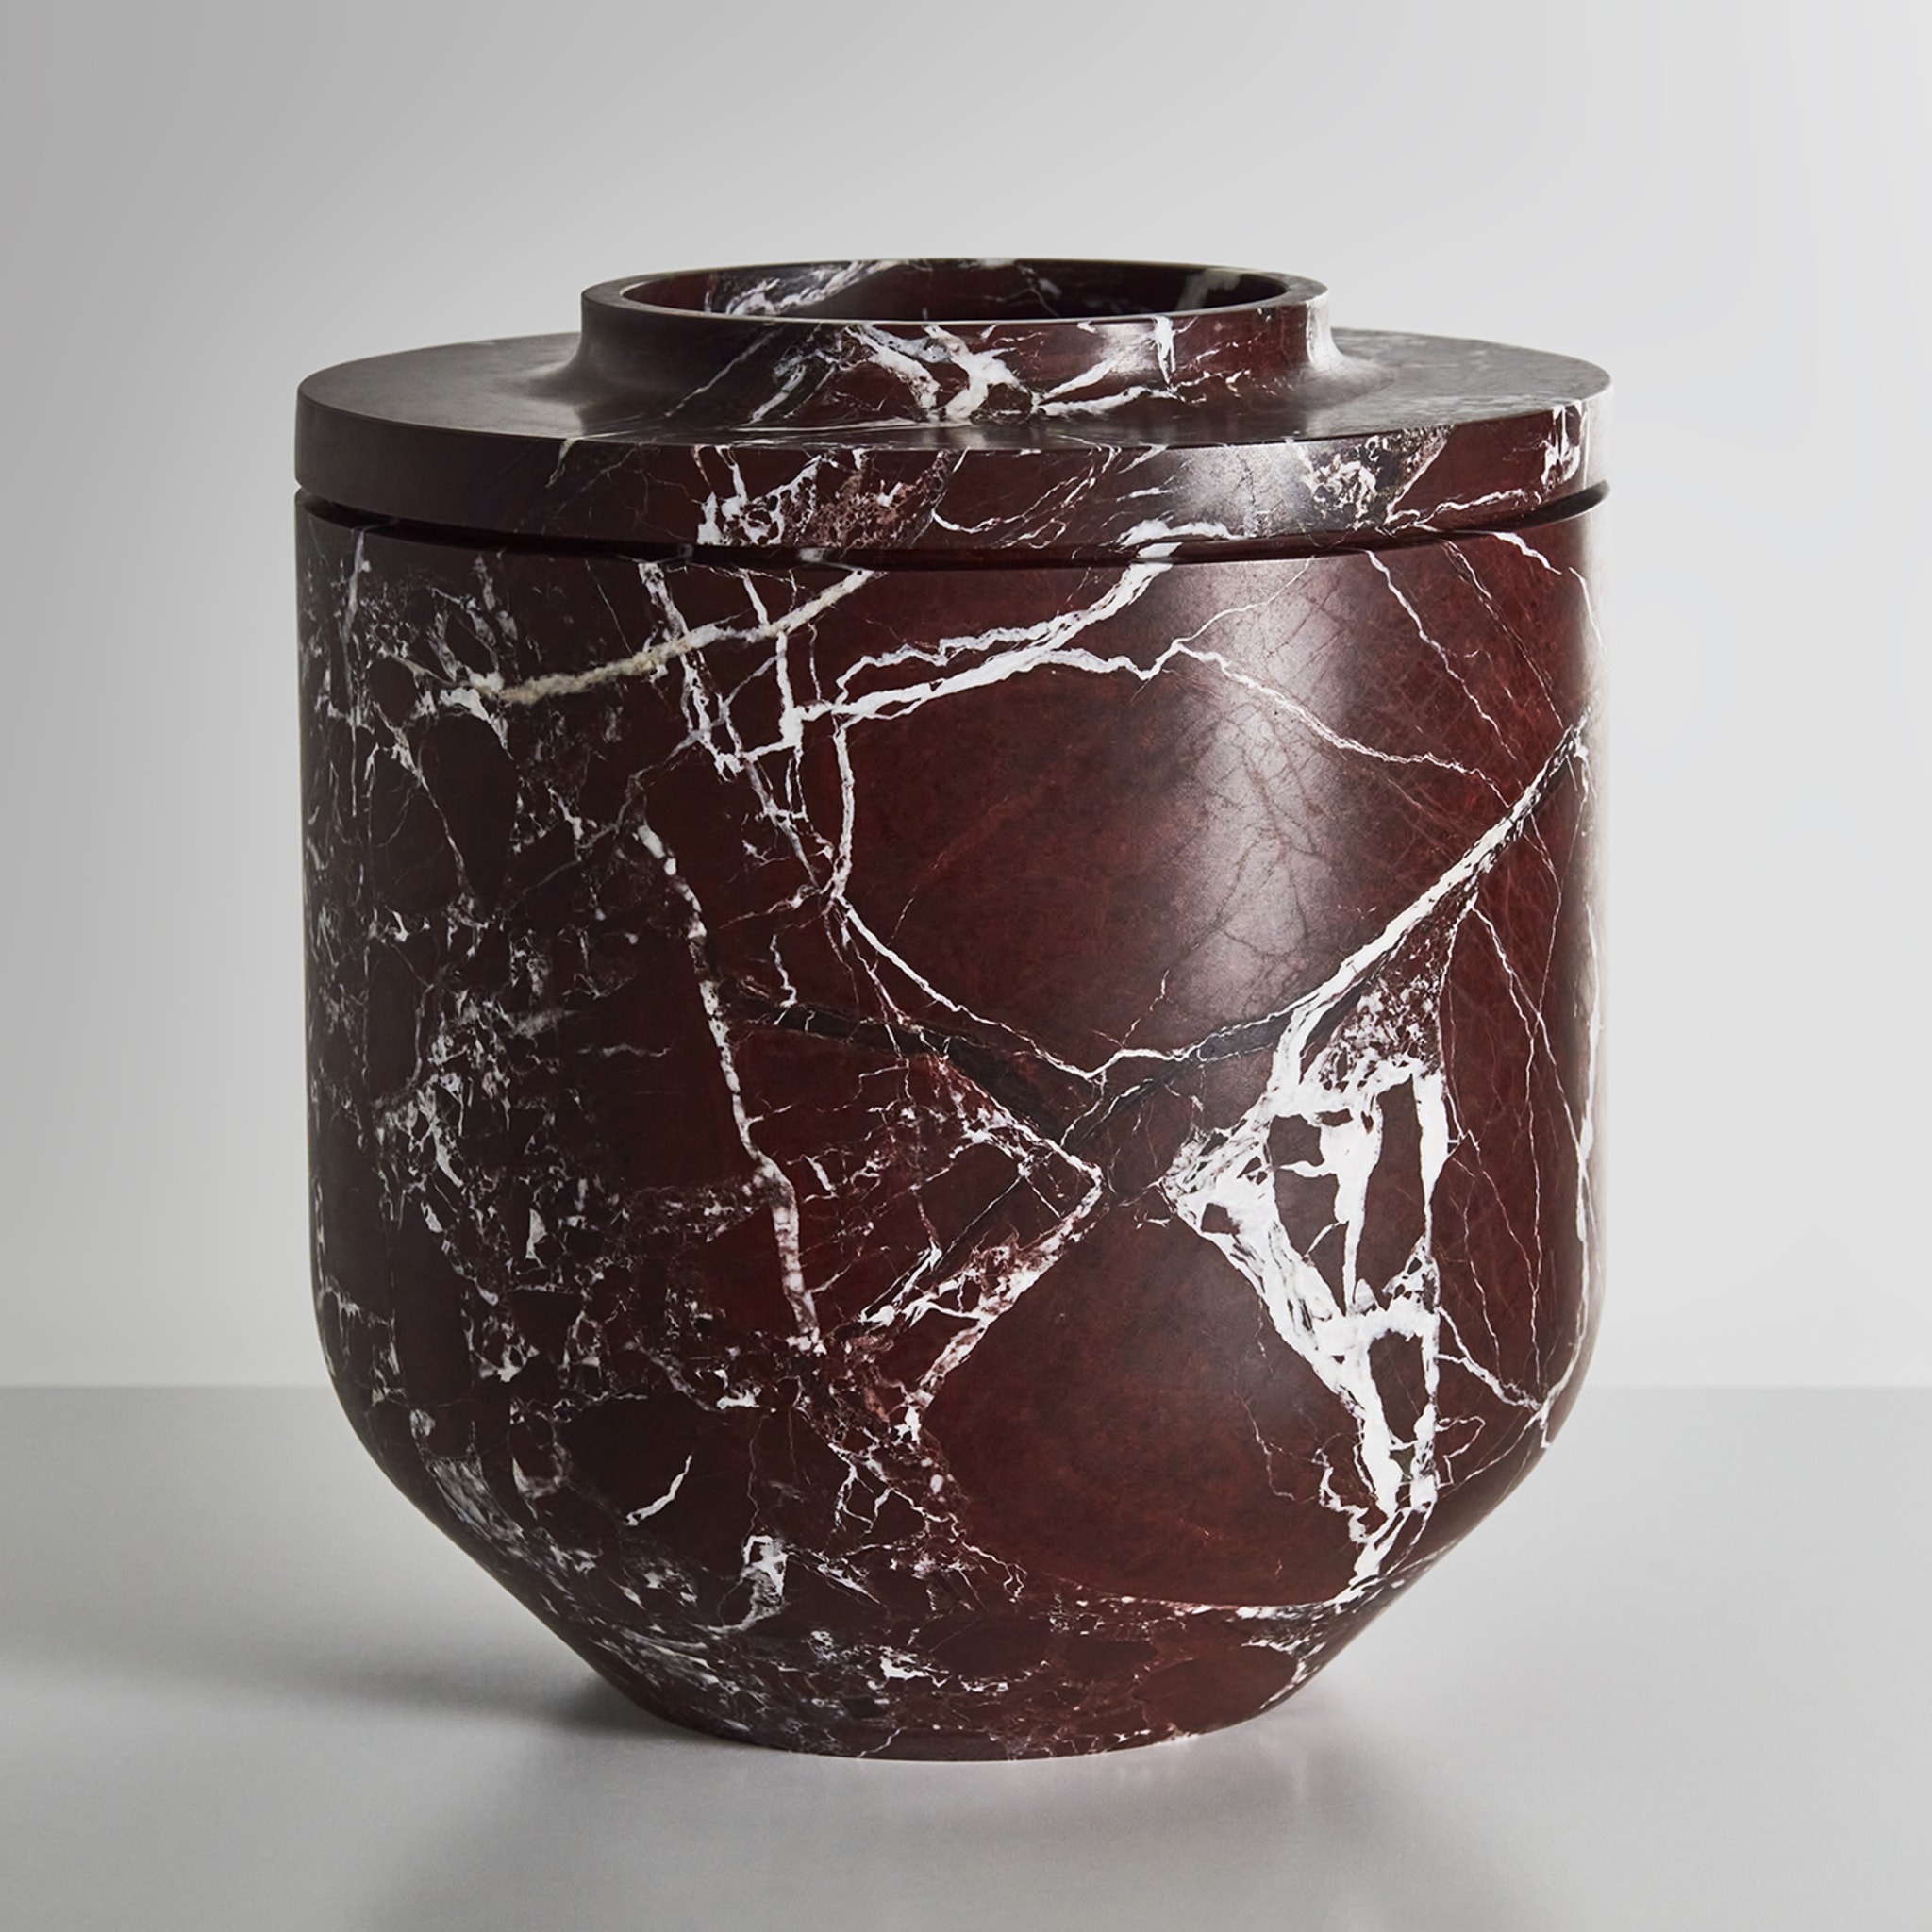 Königliche große burgunderfarbene vase von Christophe Pillet - Alternative Ansicht 3